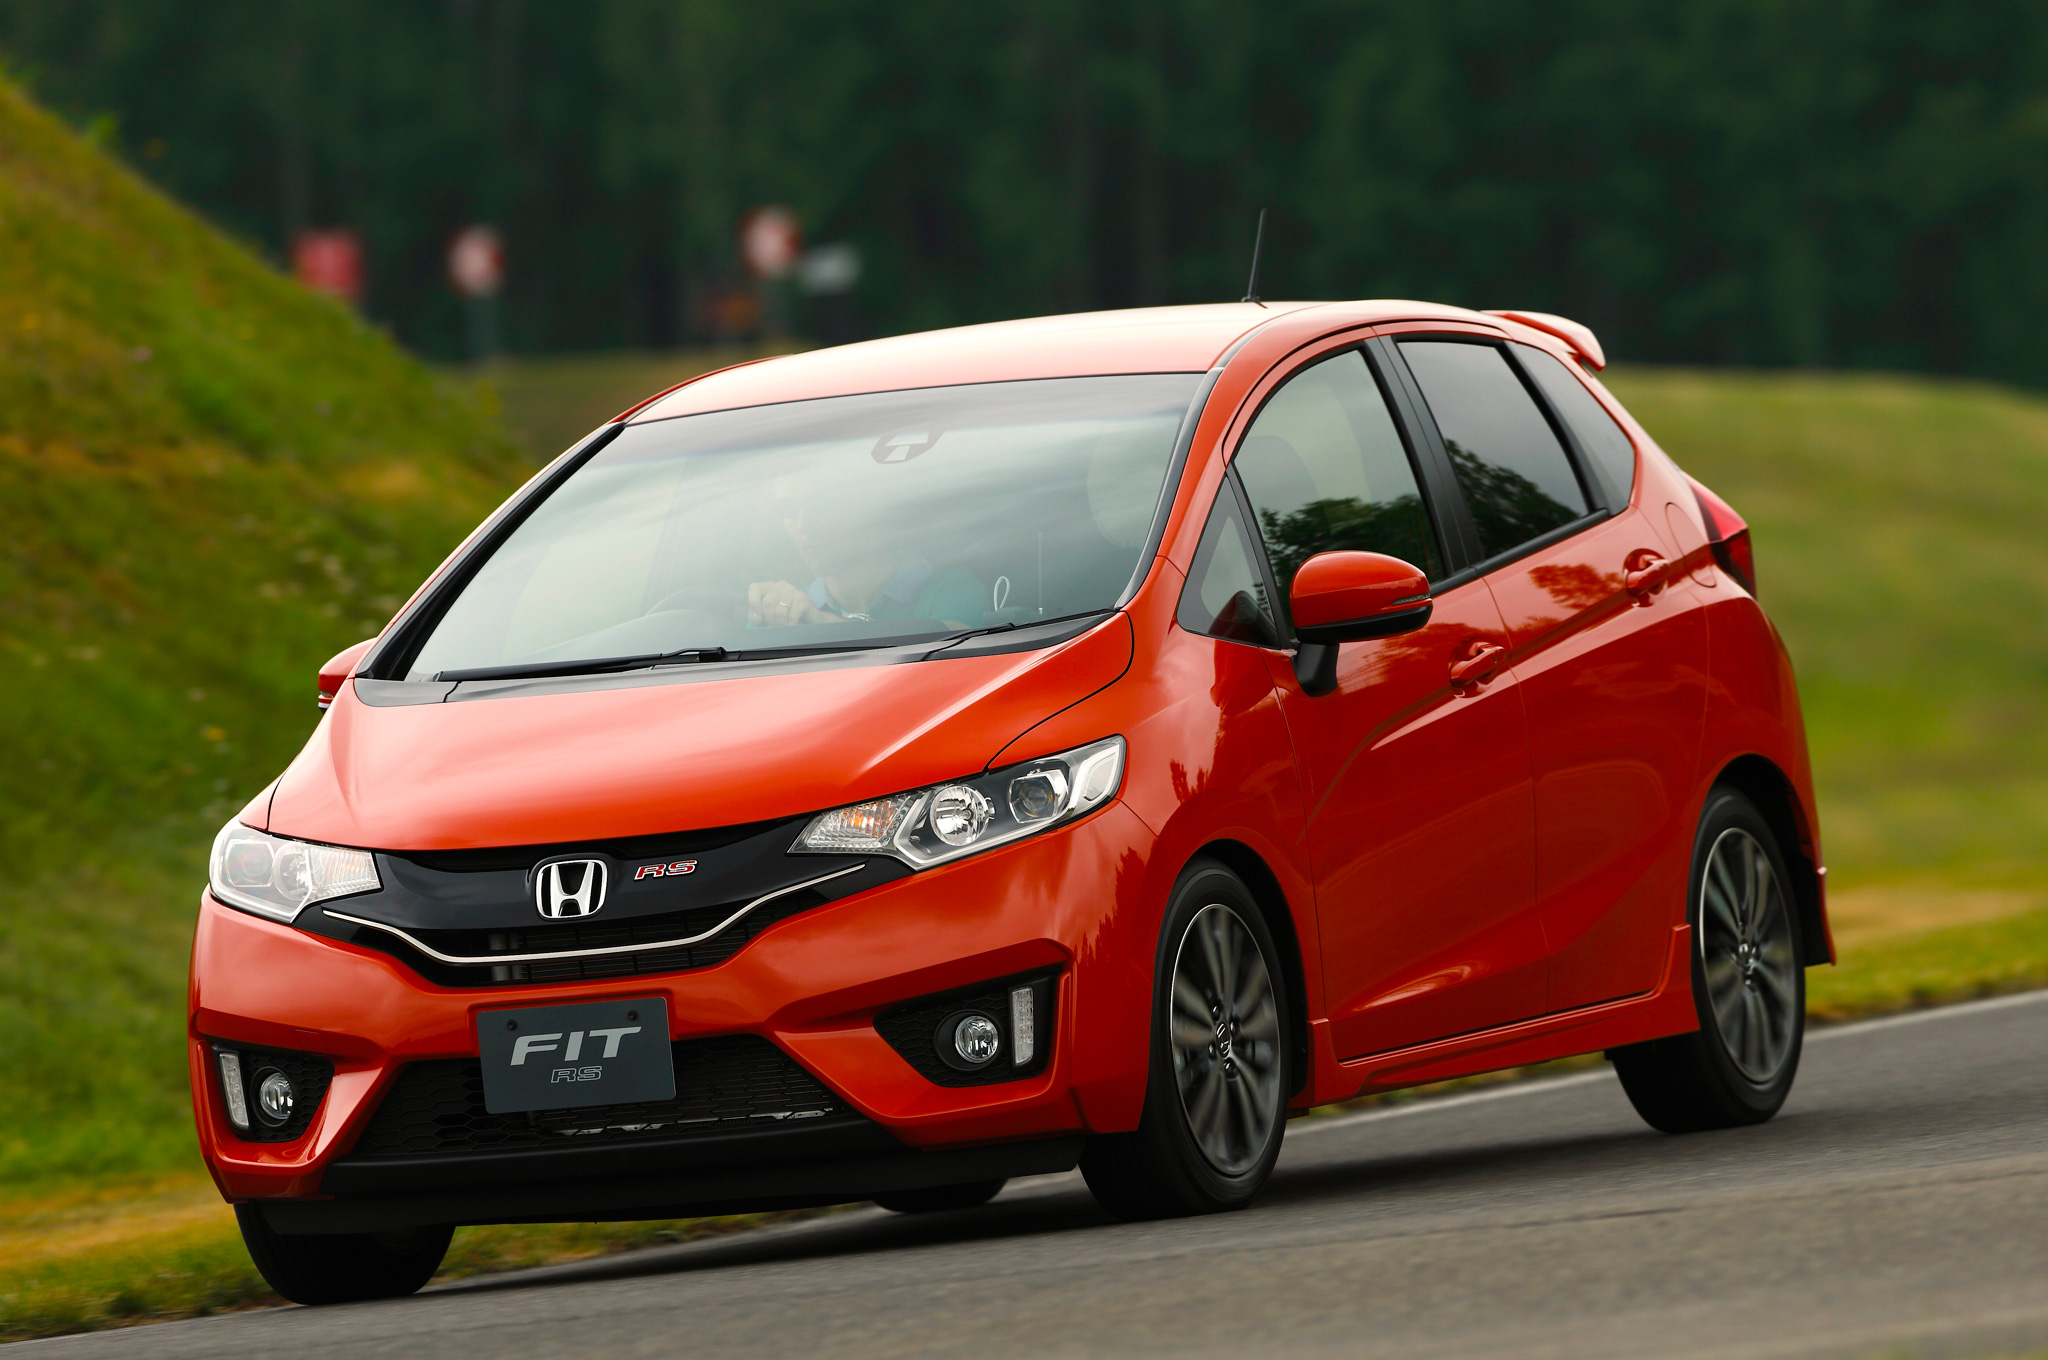 Khi so sánh xe ô tô, kiểu dáng thiết kế đặc trưng mang phong cách trẻ trung chính là điểm nhấn của Honda Fit